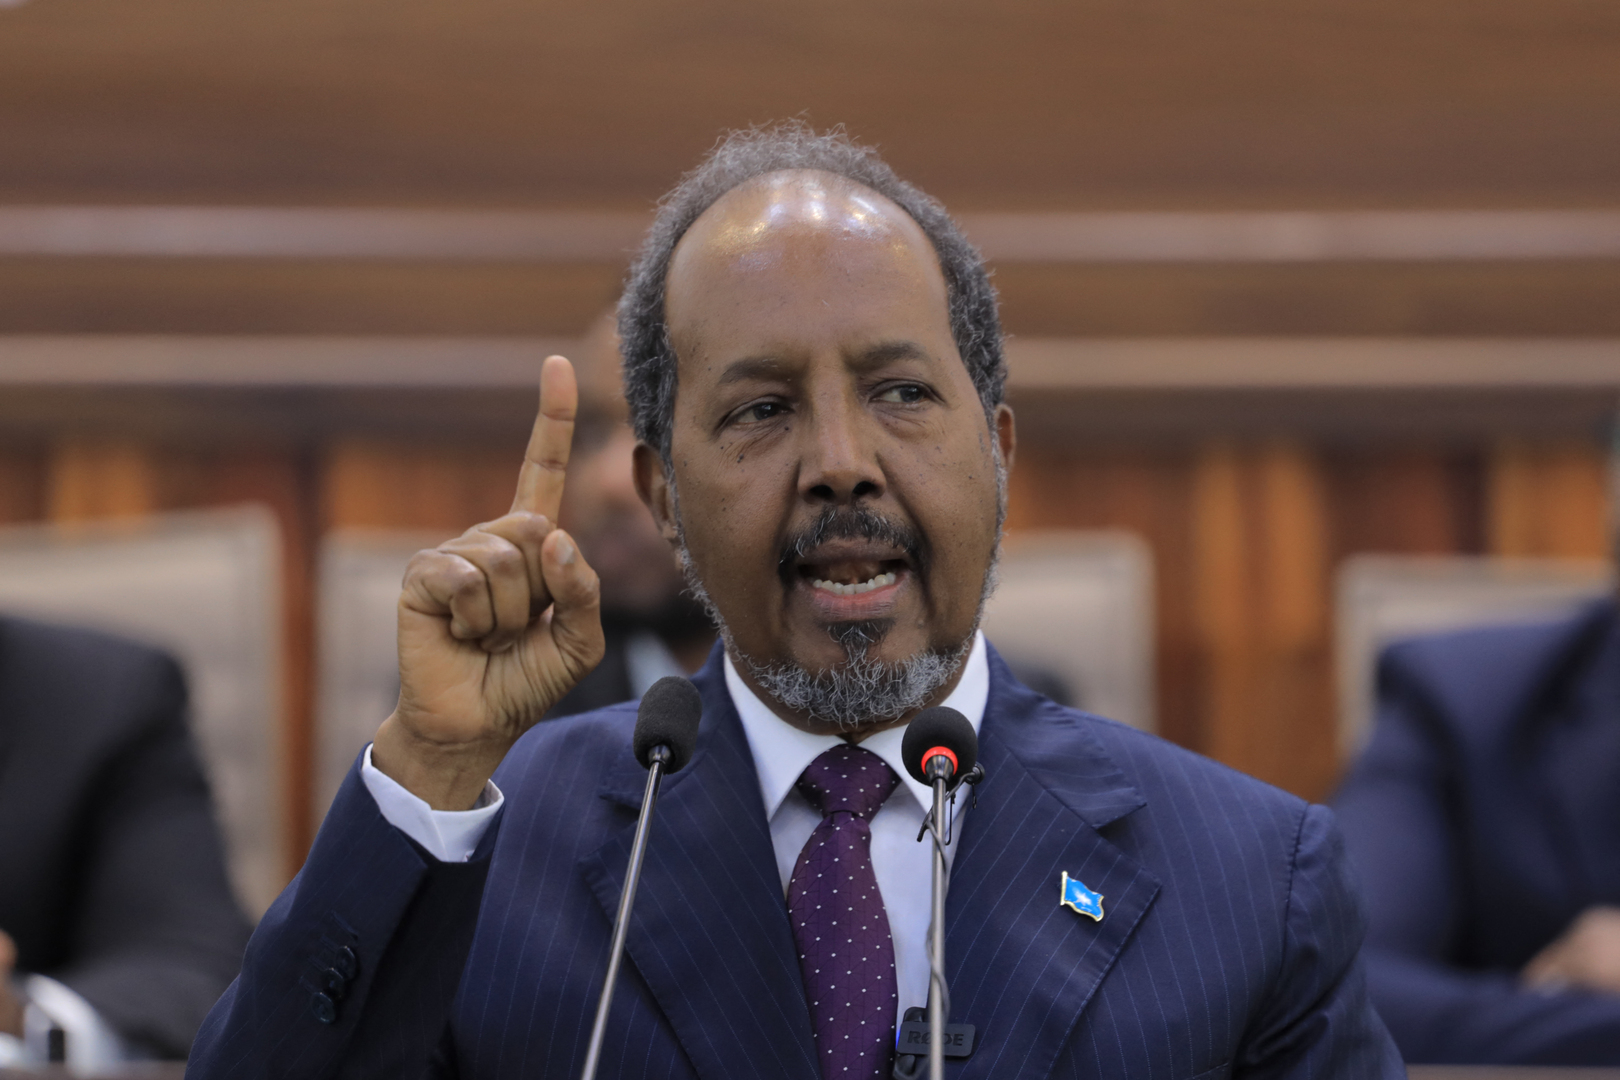 الرئيس الصومالي يصدر بيانا شديد اللهجة بخصوص الأزمة مع إثيوبيا